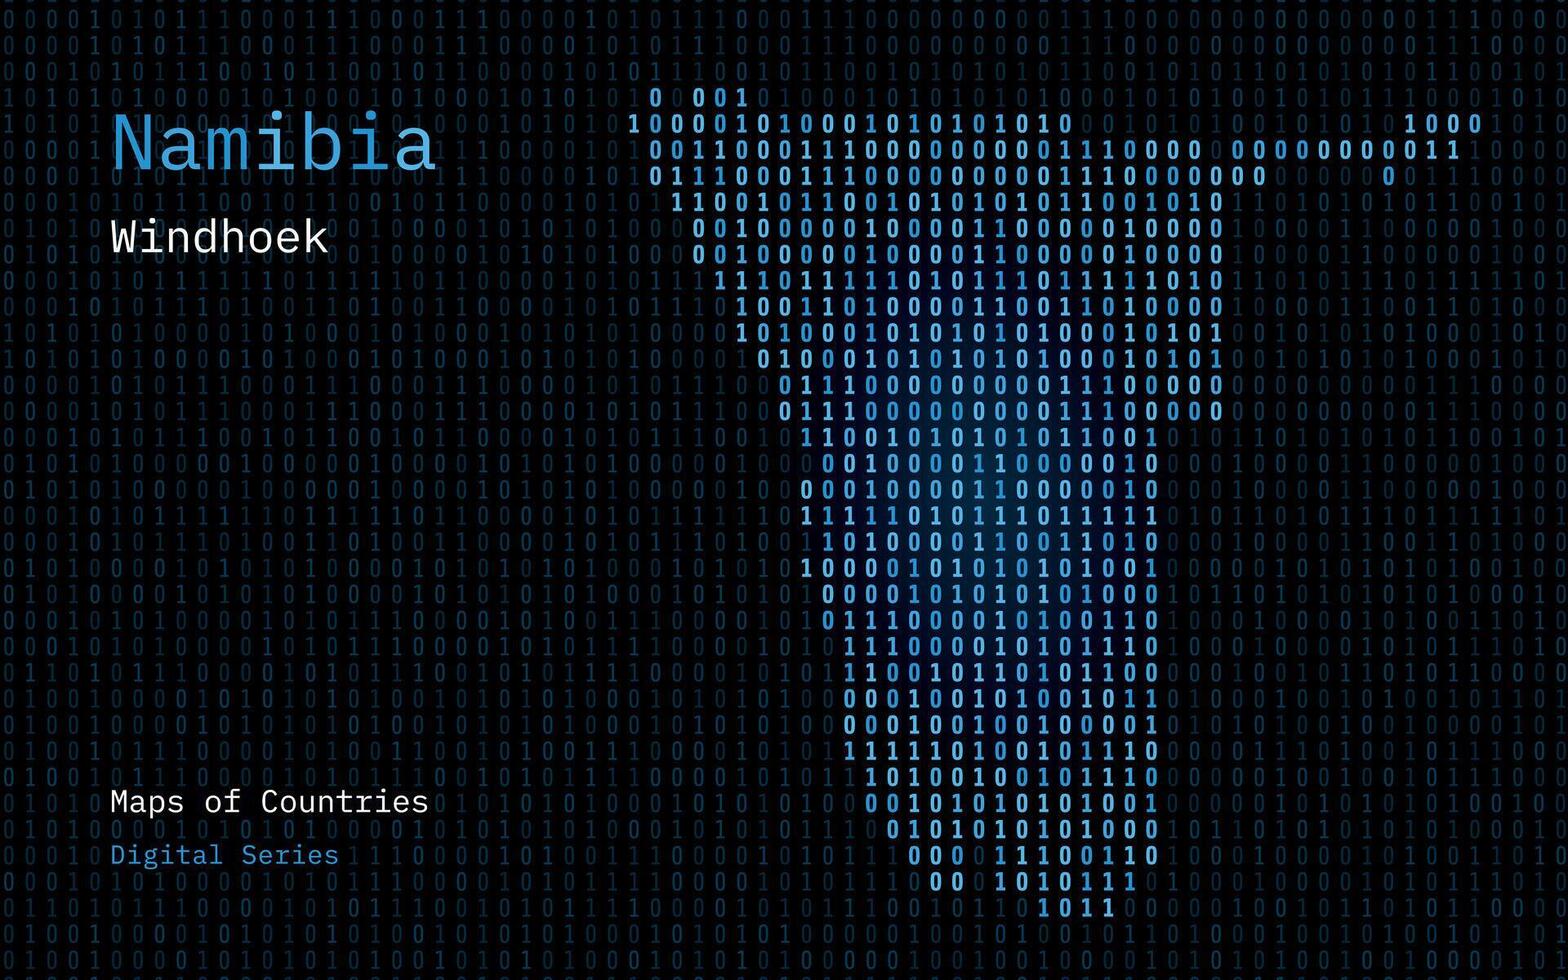 Namibia Karte gezeigt im binär Code Muster. tsmc. Matrix Zahlen, null, eins. Welt Länder Vektor Karten. Digital Serie